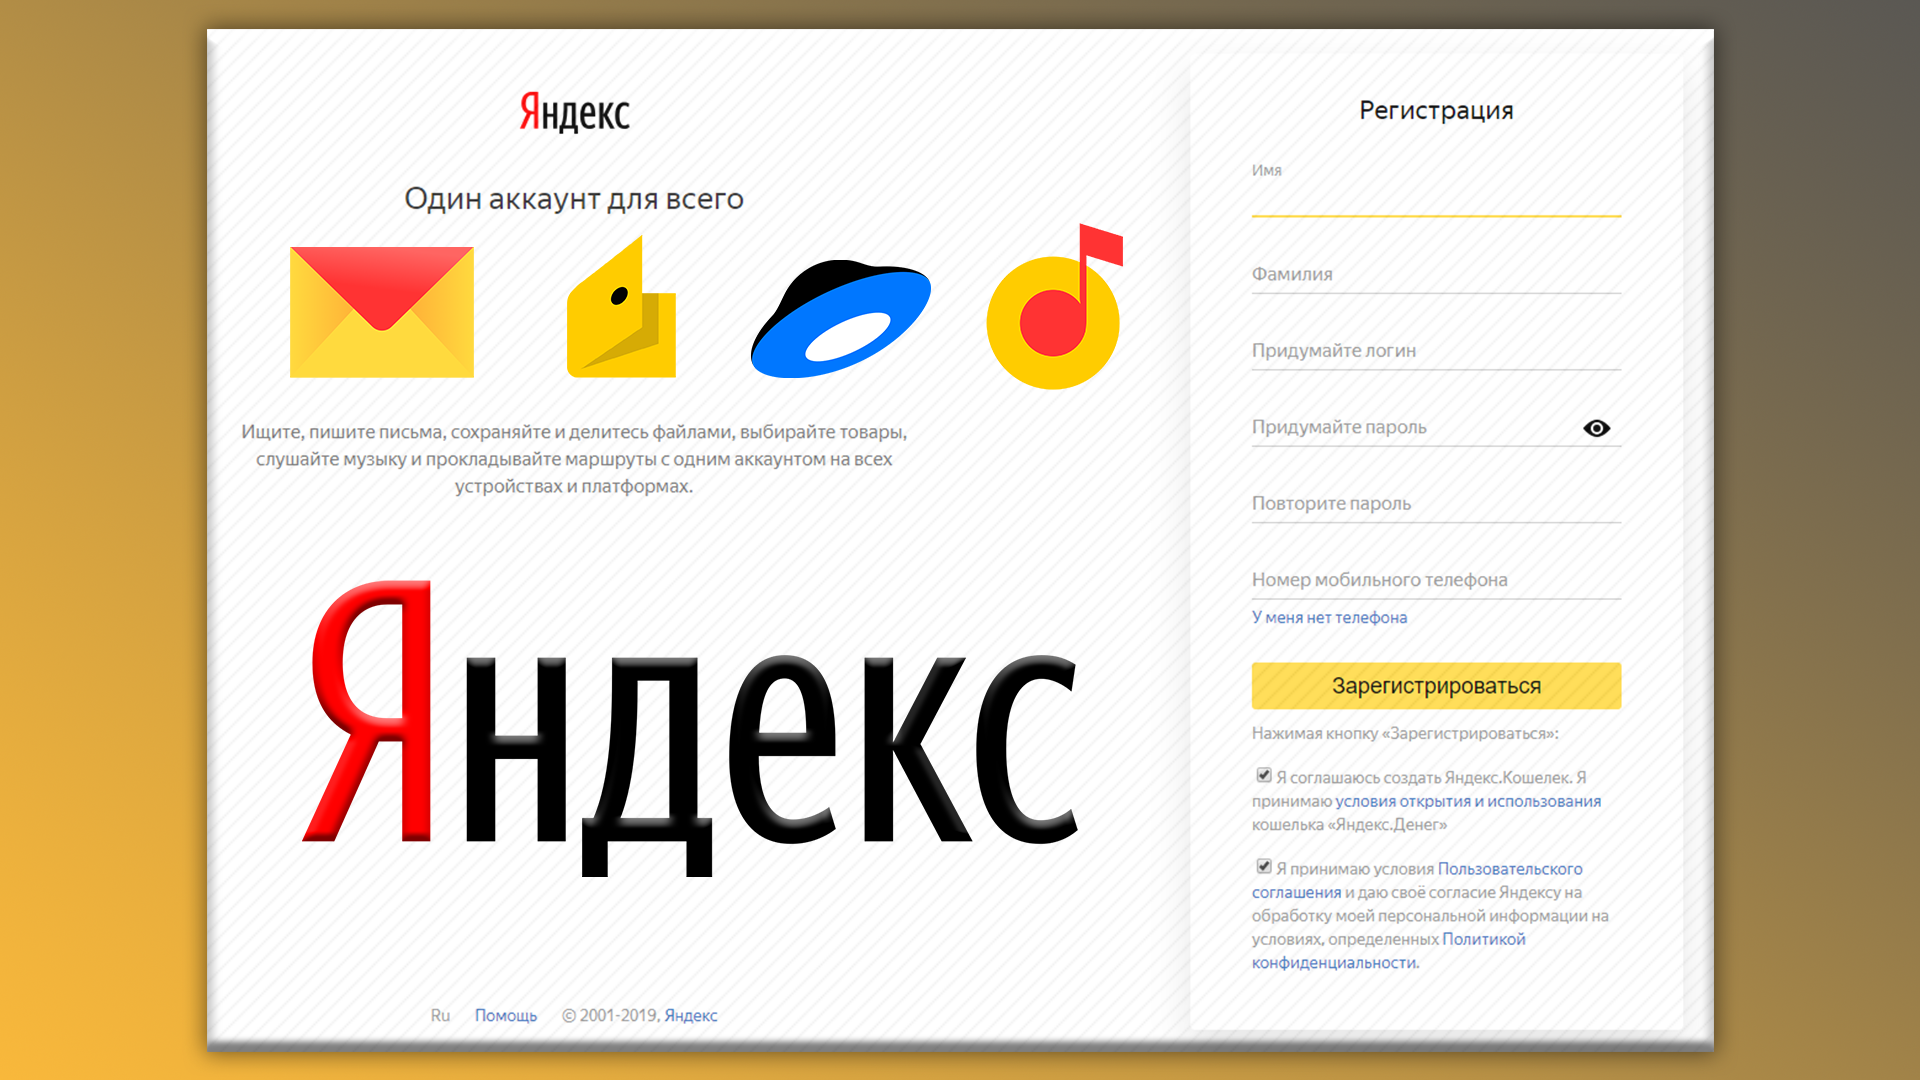 Вступительная картинка к статьи: форма регистрации Yanedex с иконками сервисов компании (яндекс почта, деньги, диск, музыка) и логотипом Яндекс